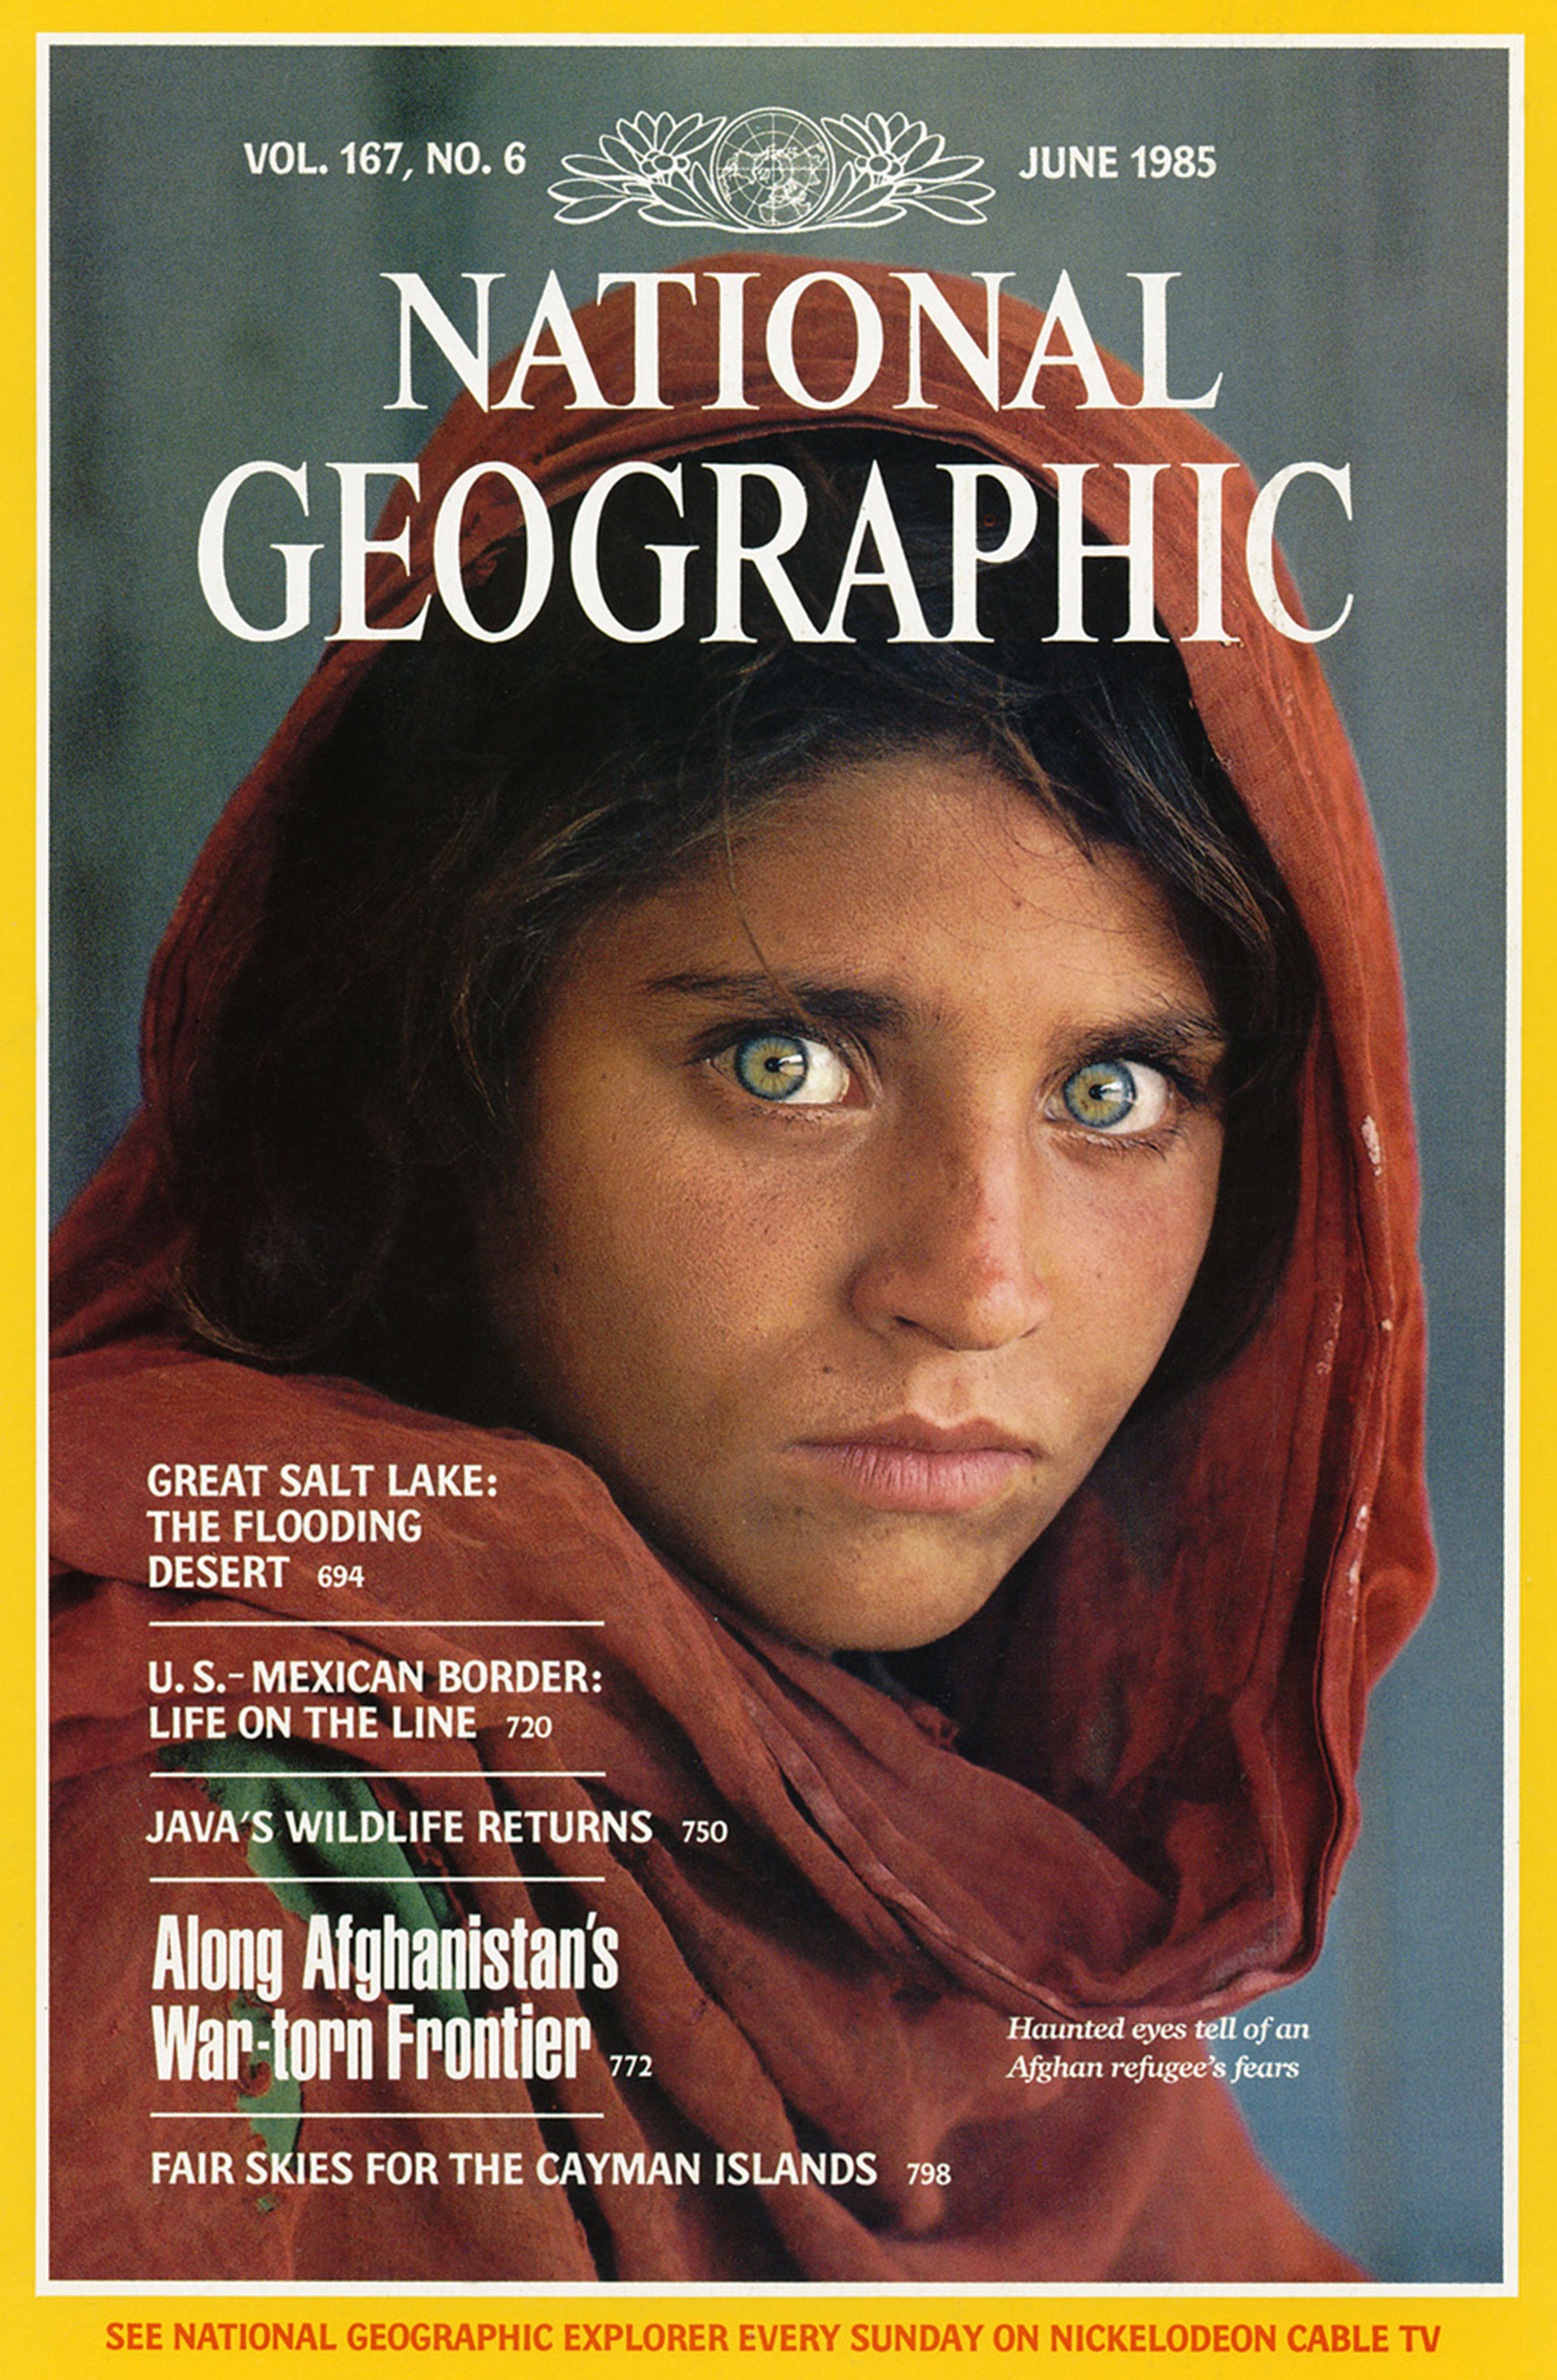 La portada de la revista National Geographic de 1985 con la entonces niña Sharbat Gula y sus impactantes y profundos ojos verdes que se convirtieron en un símbolo de las guerras en Afganistán (Steve McCurry/National Geographic)